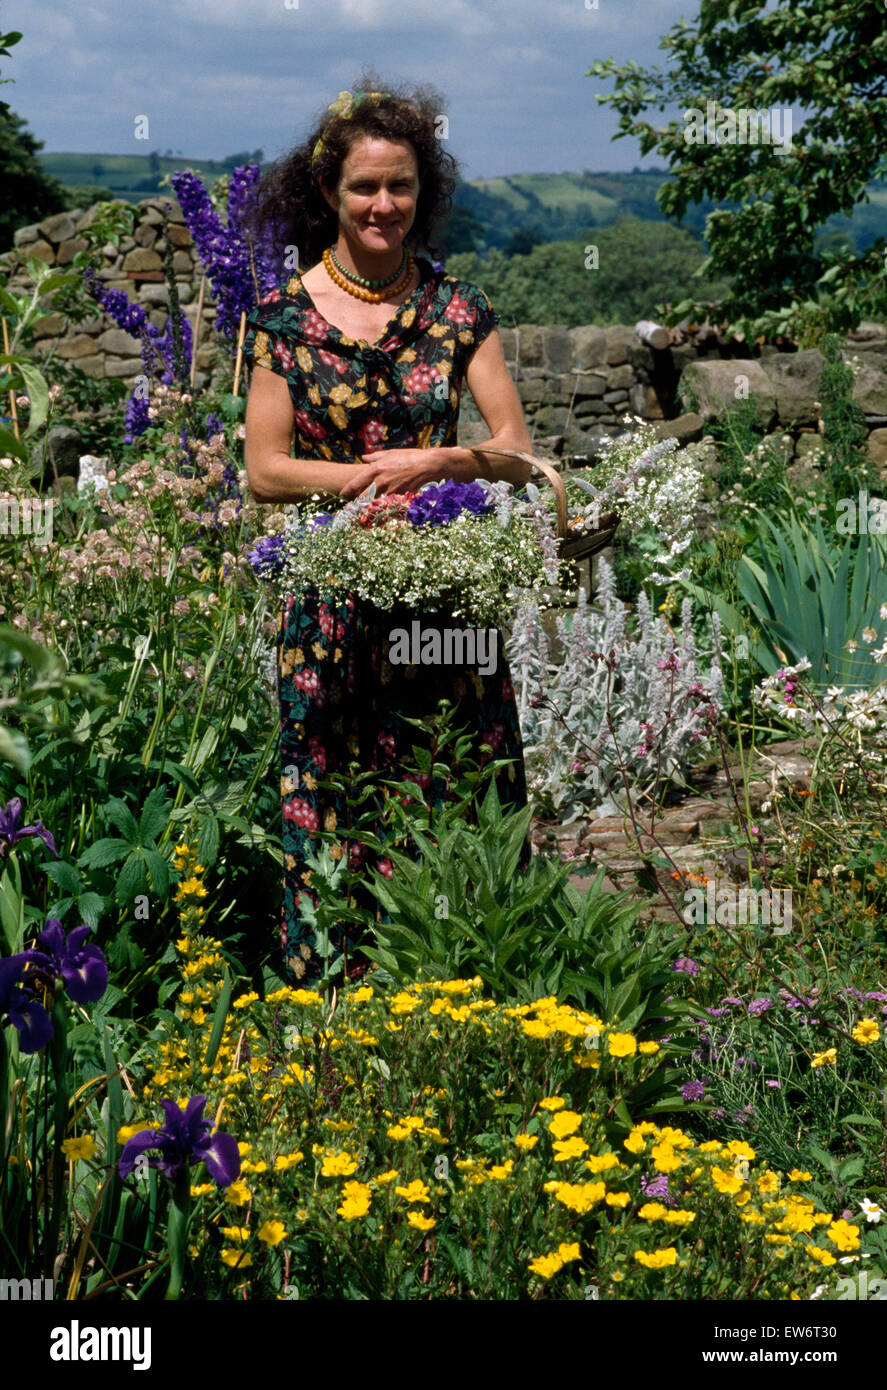 Porträt einer Frau mit einem Korb von Schnittblumen in einem Landschaftsgarten Stockfoto